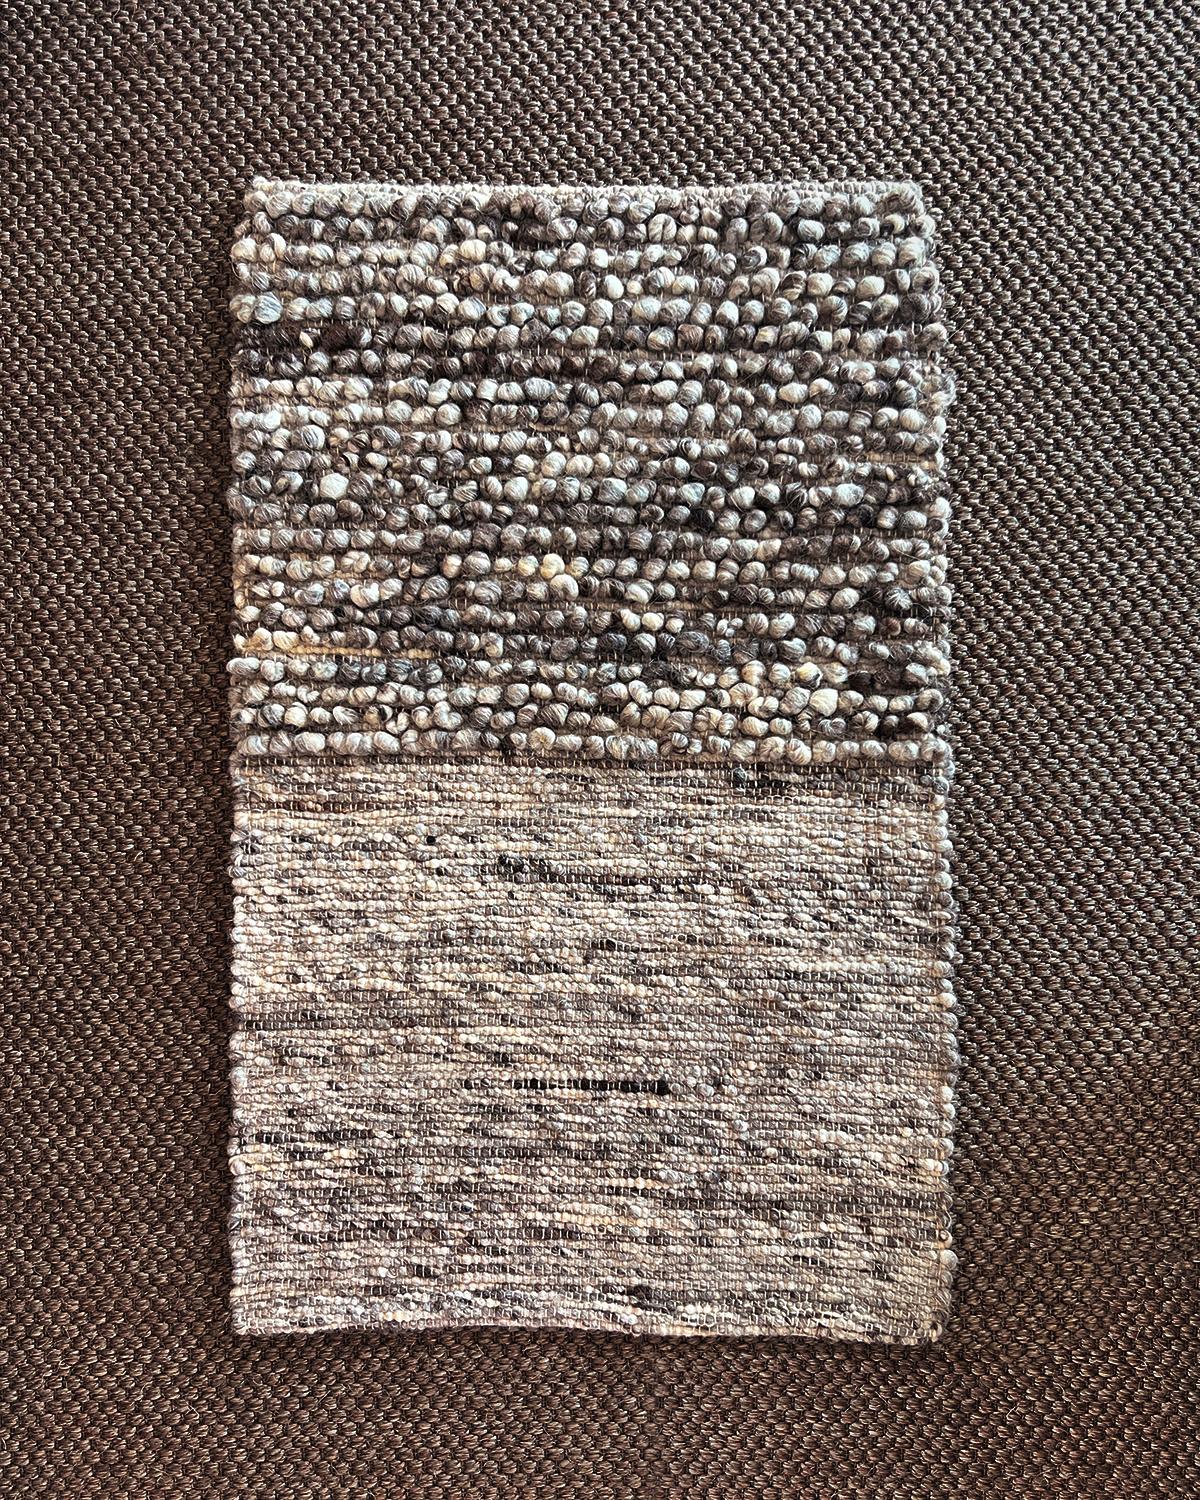 Un tapis en laine texturée douillet pour réchauffer votre intérieur. Élevez votre espace de vie avec le tapis Fatima Nubby Wool. Fabriquée à la main avec 100 % de laine du Portugal, sa texture nubby unique ajoute une touche de modernité organique à